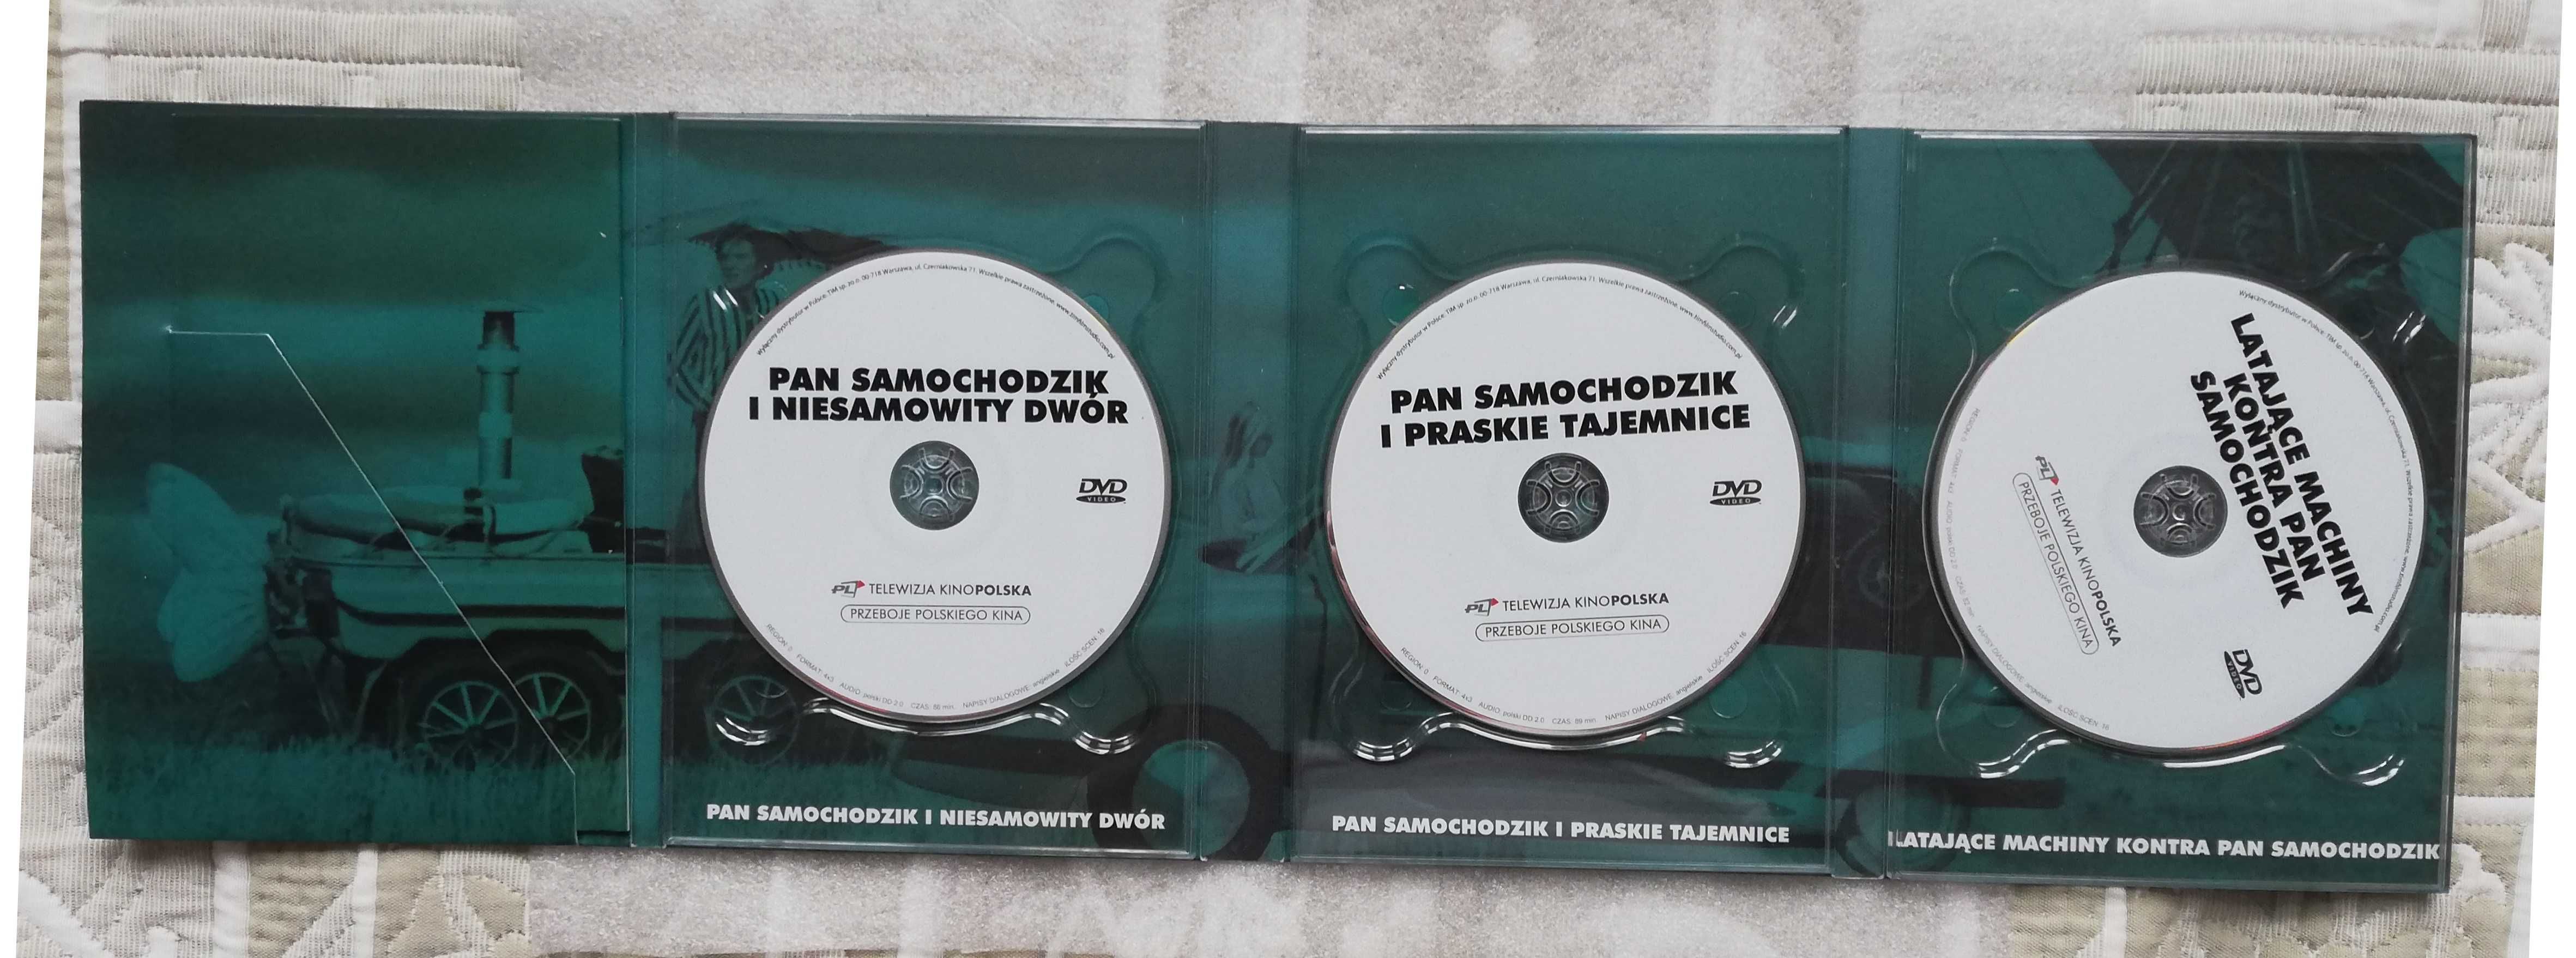 Płyty DVD zestaw filmy Pan Kleks Pan Samochodzik